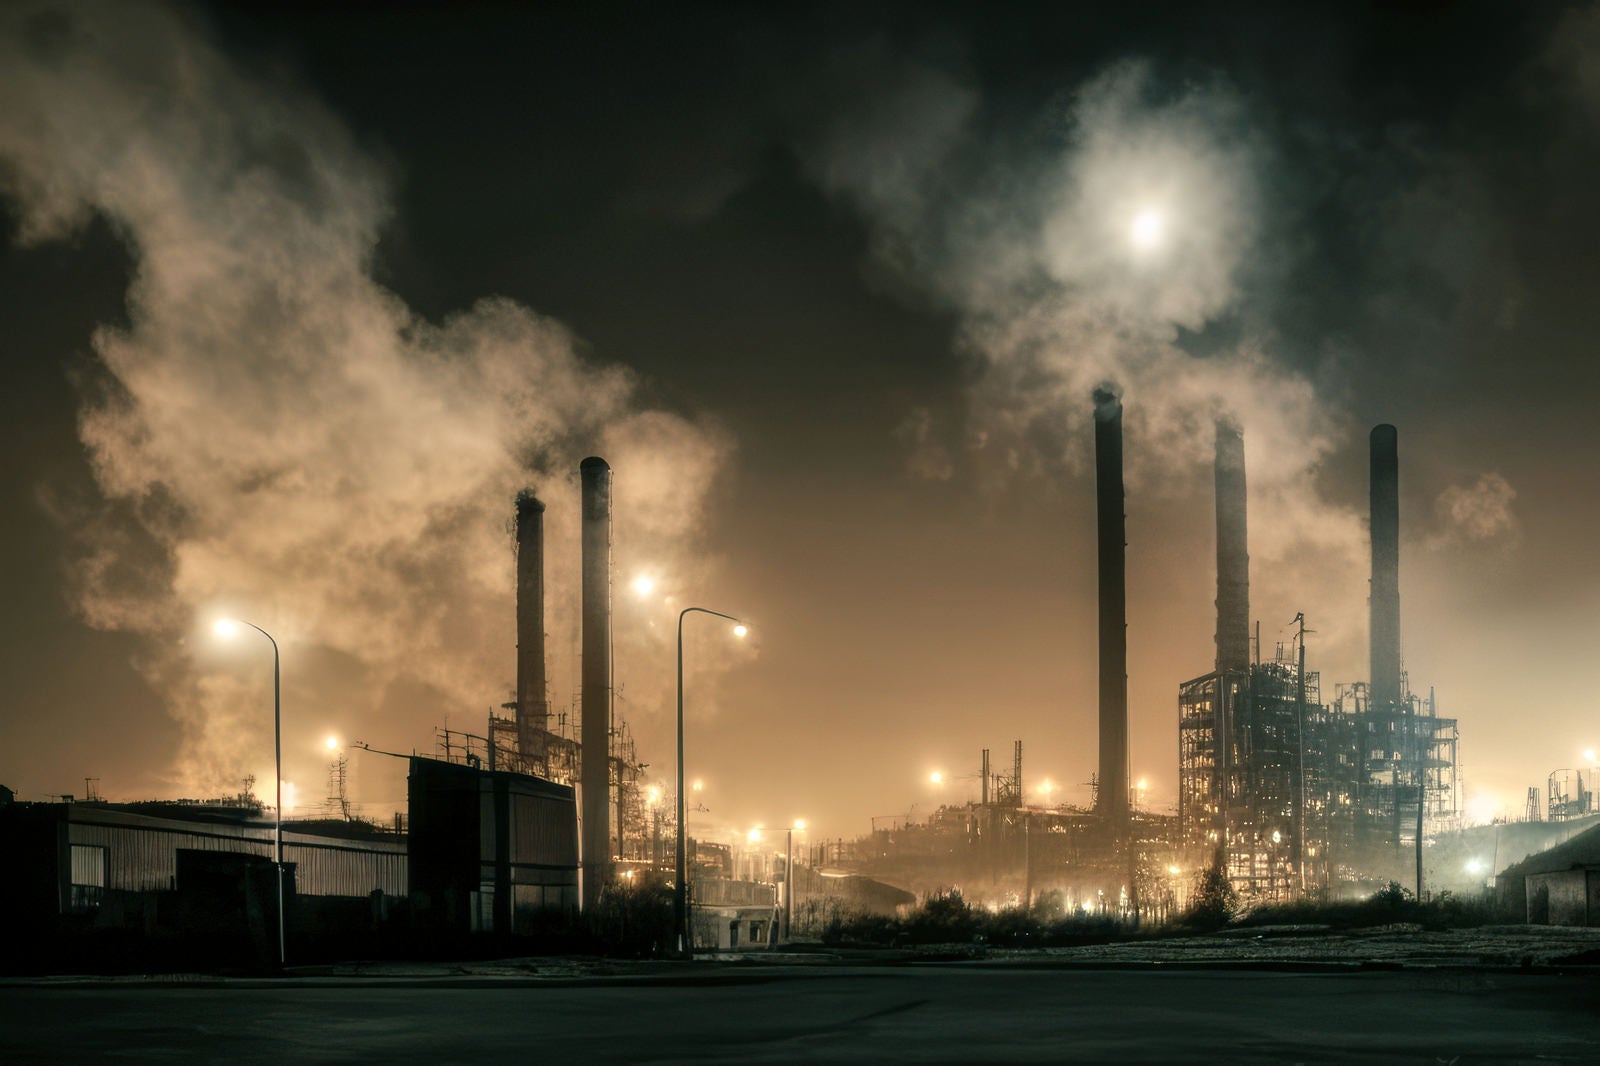 「工場夜景と煙突からの煙」の写真